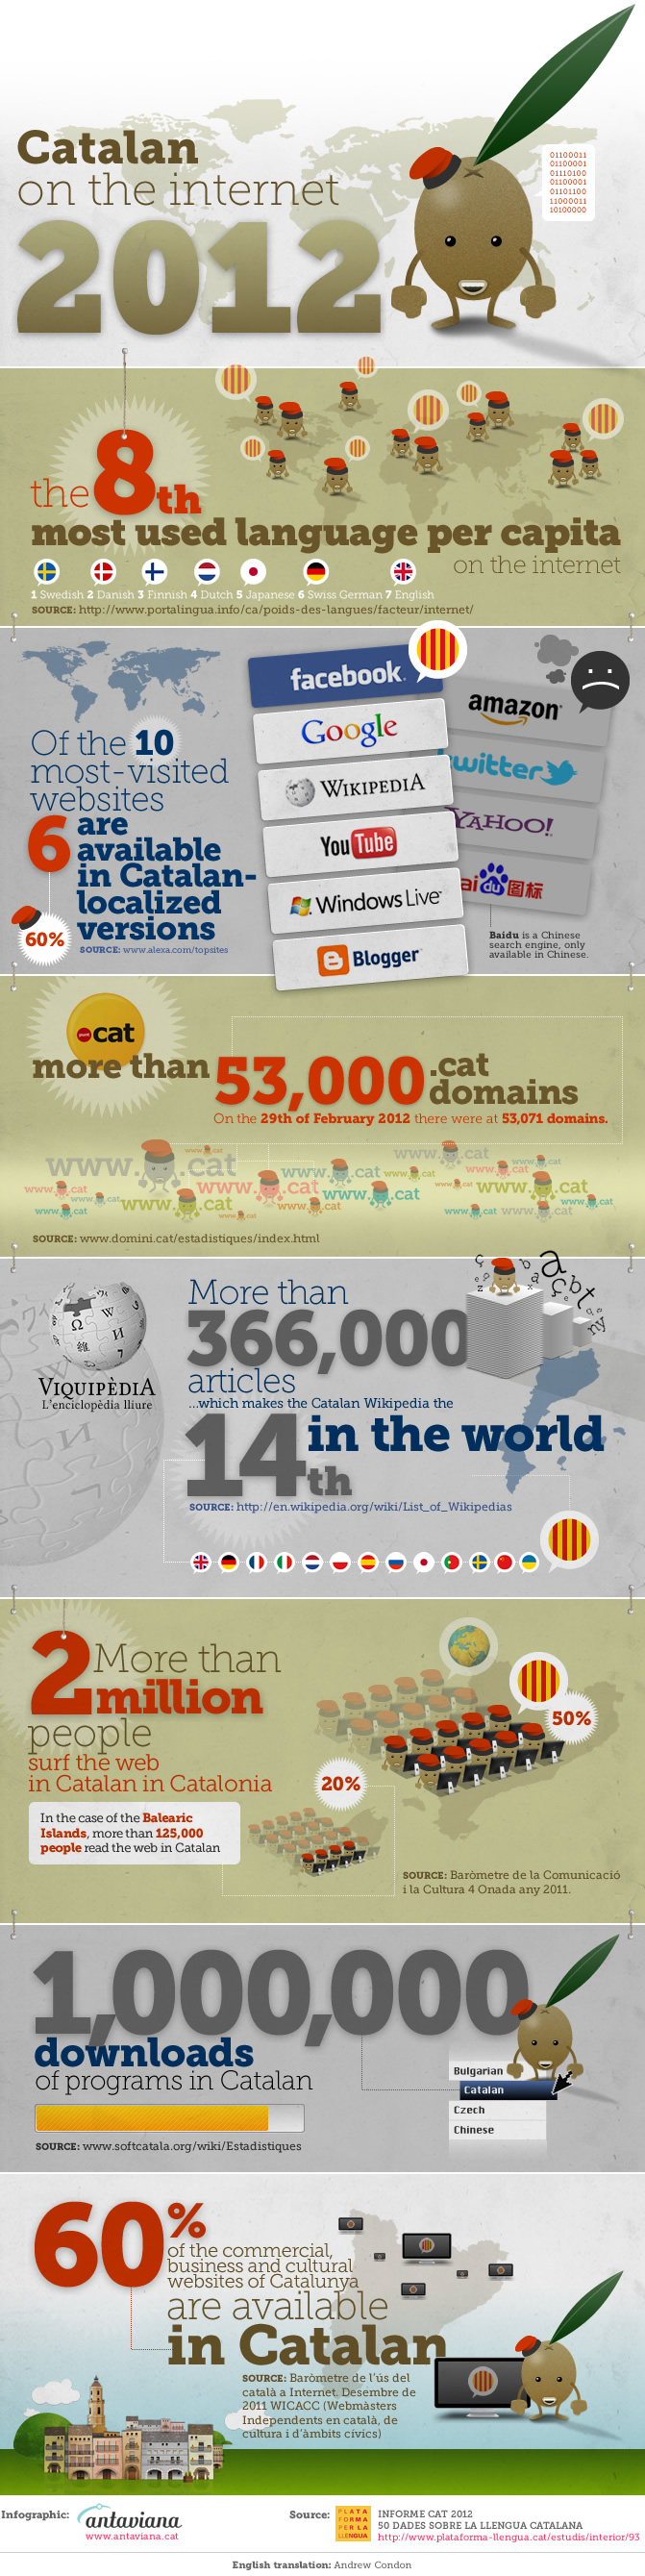 infografia-antaviana-catalan-on-the-internet-2012-blog-de-hostalia-hosting